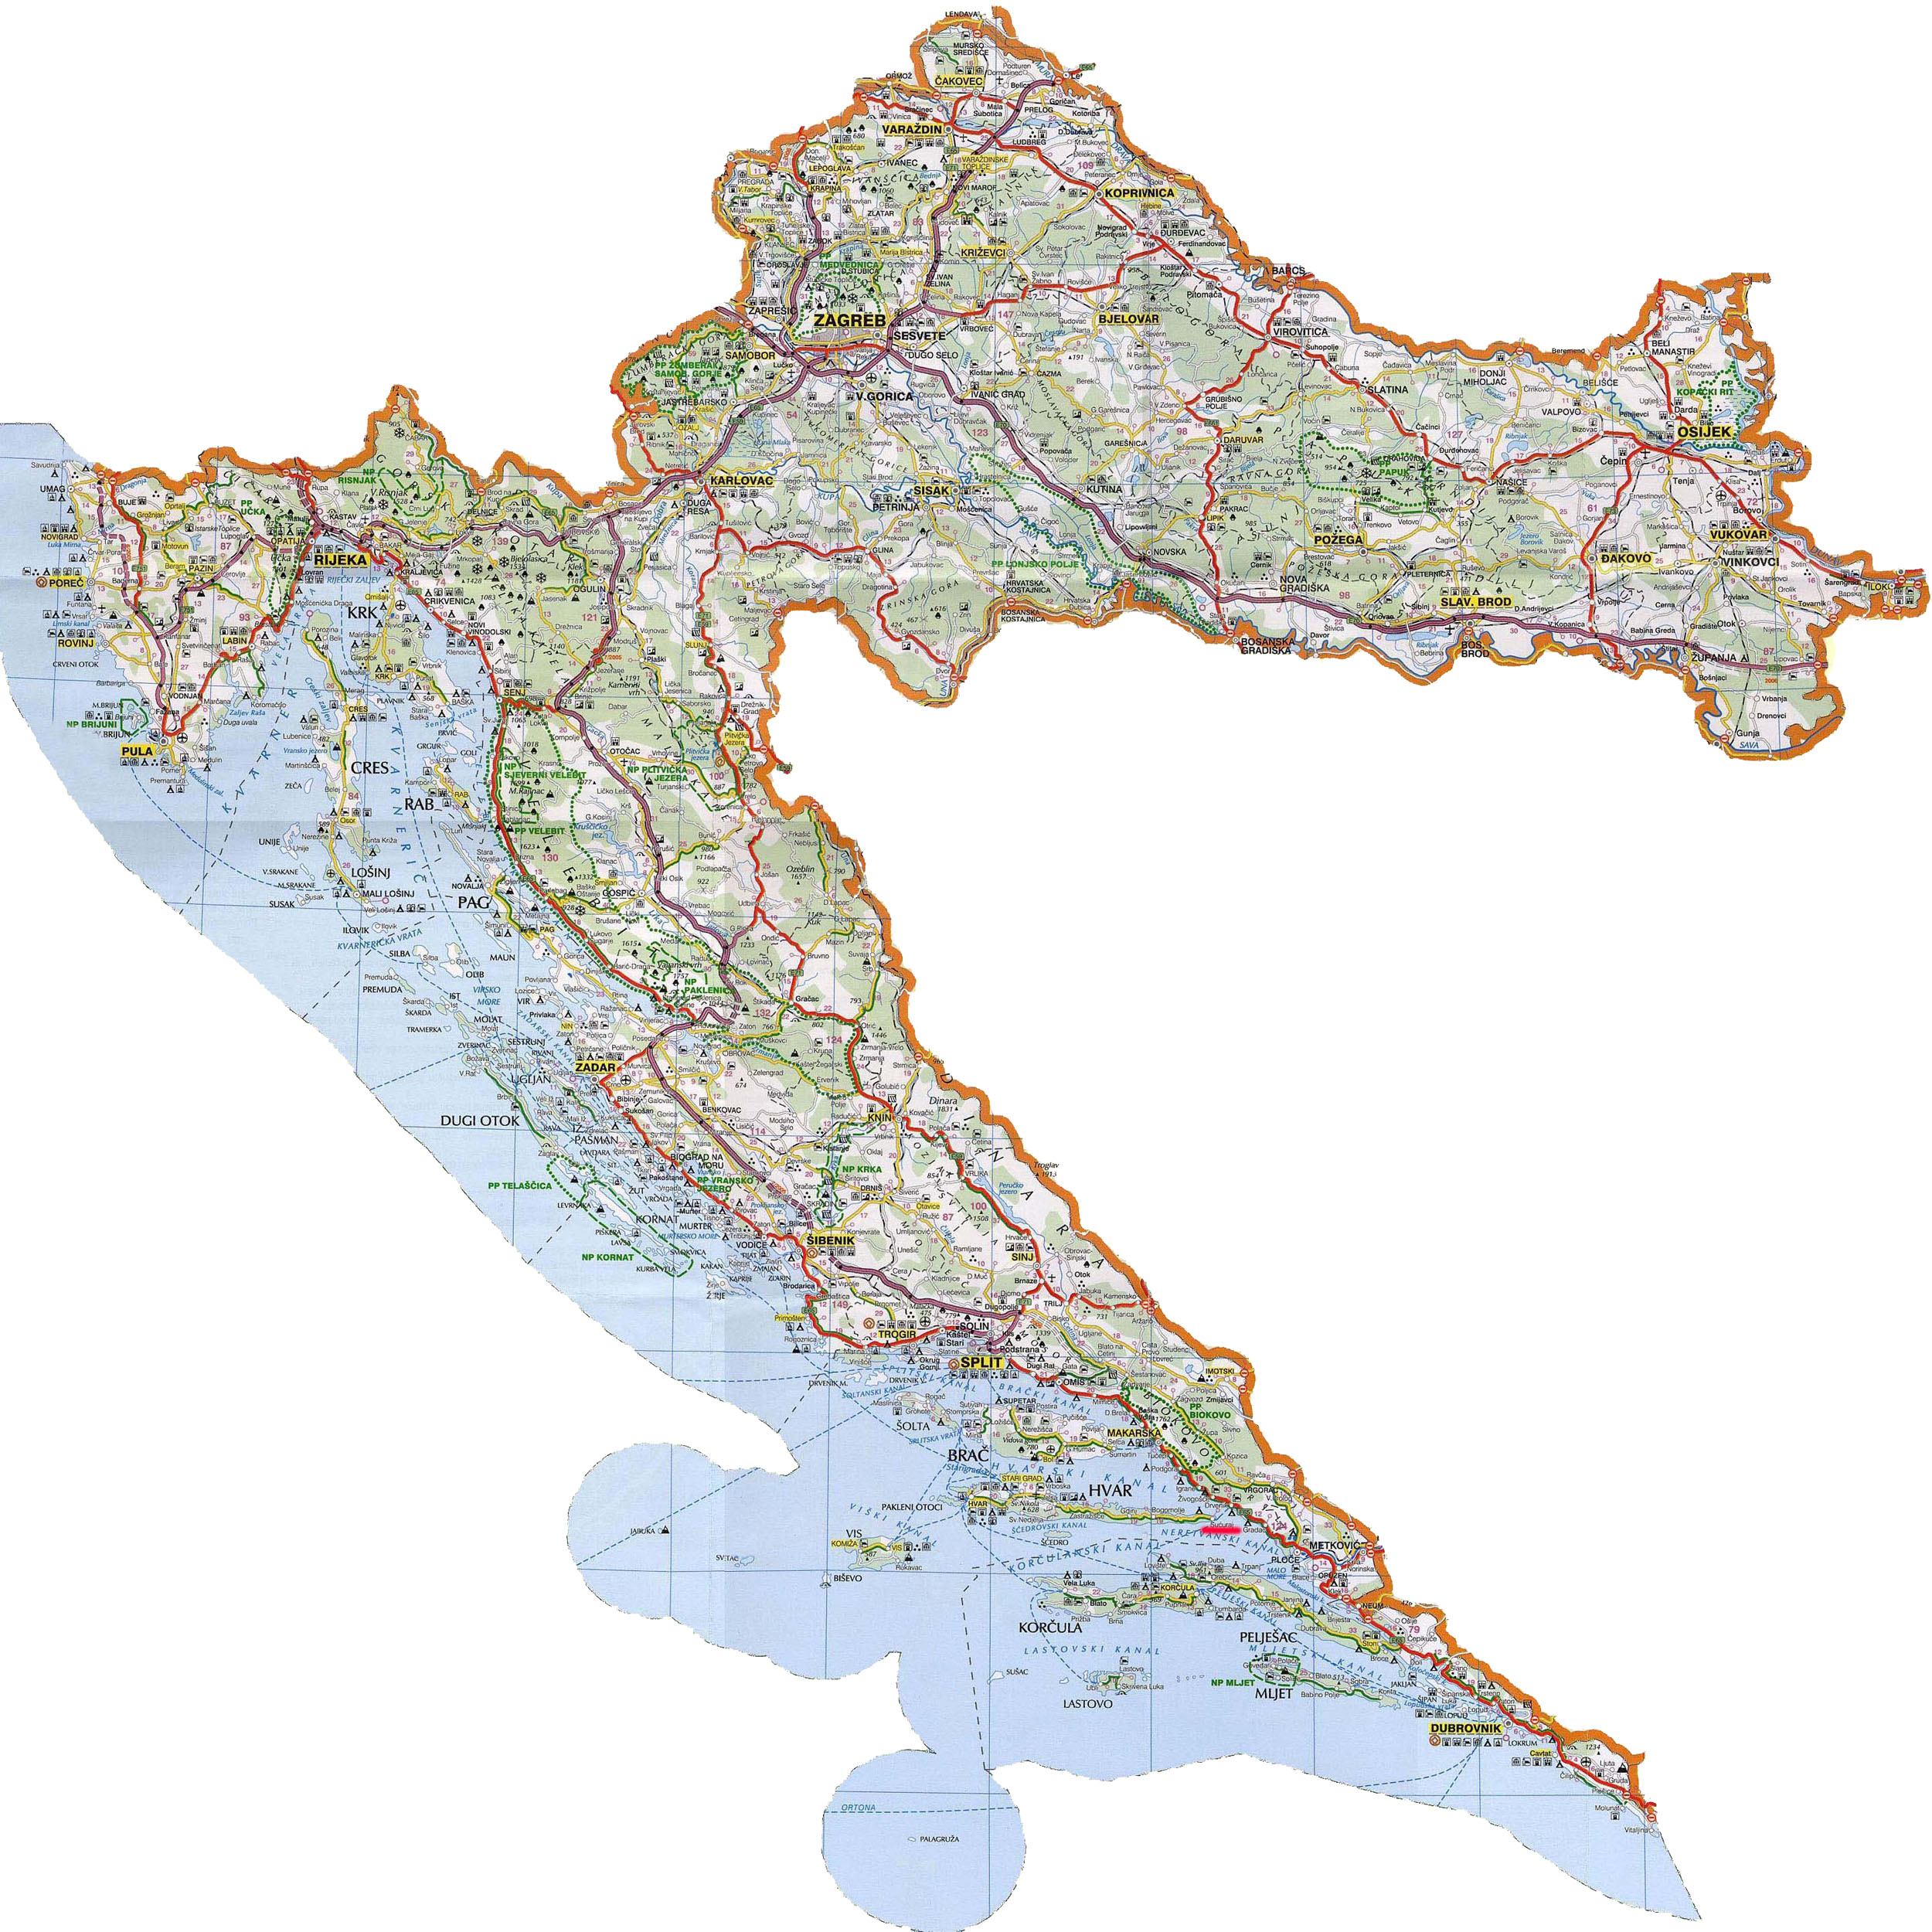 geografska karta hrvatske online Hvala vam na gostovanju i zbogom komšije!   published by  geografska karta hrvatske online